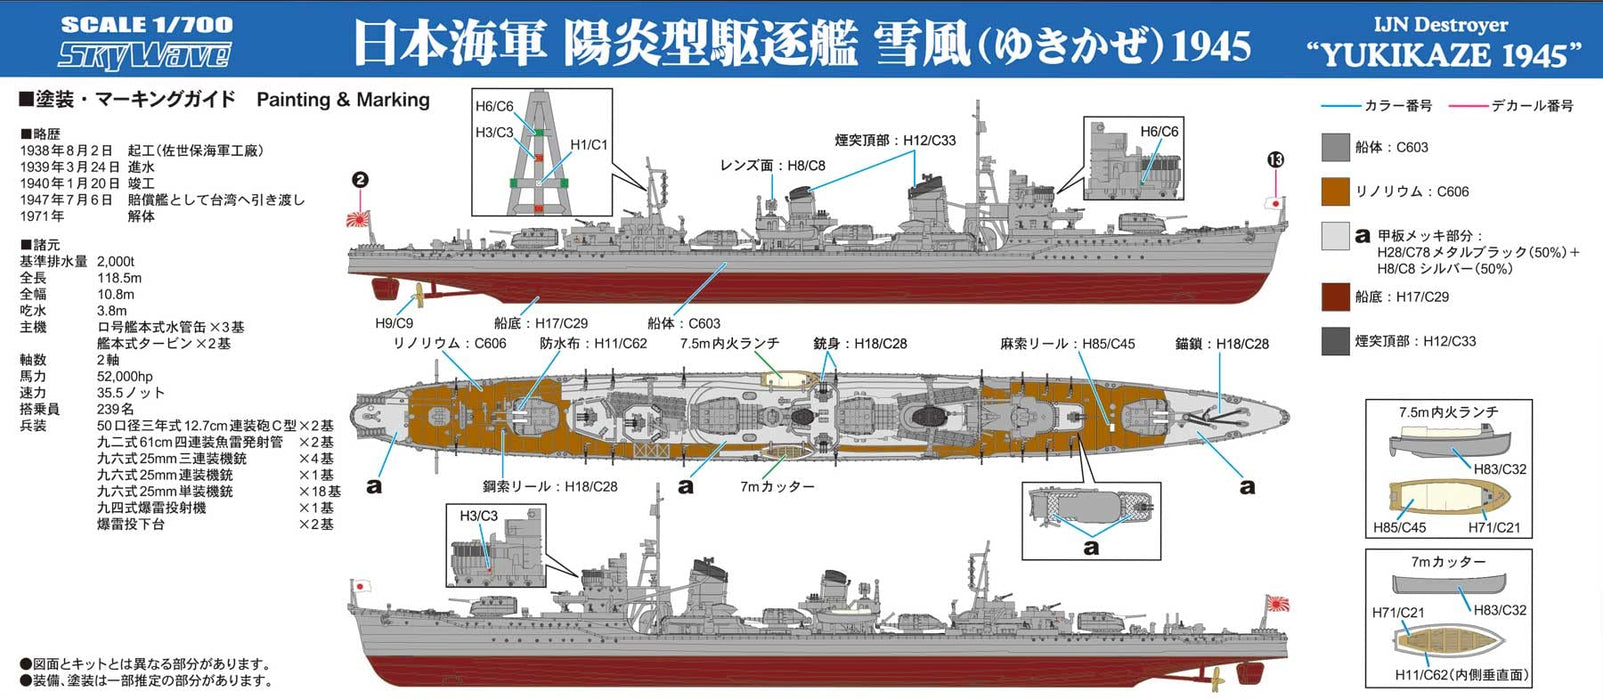 Pit Road 1/700 série Skywave destroyer de la marine japonaise Yukikaze 1945 modèle en plastique W232